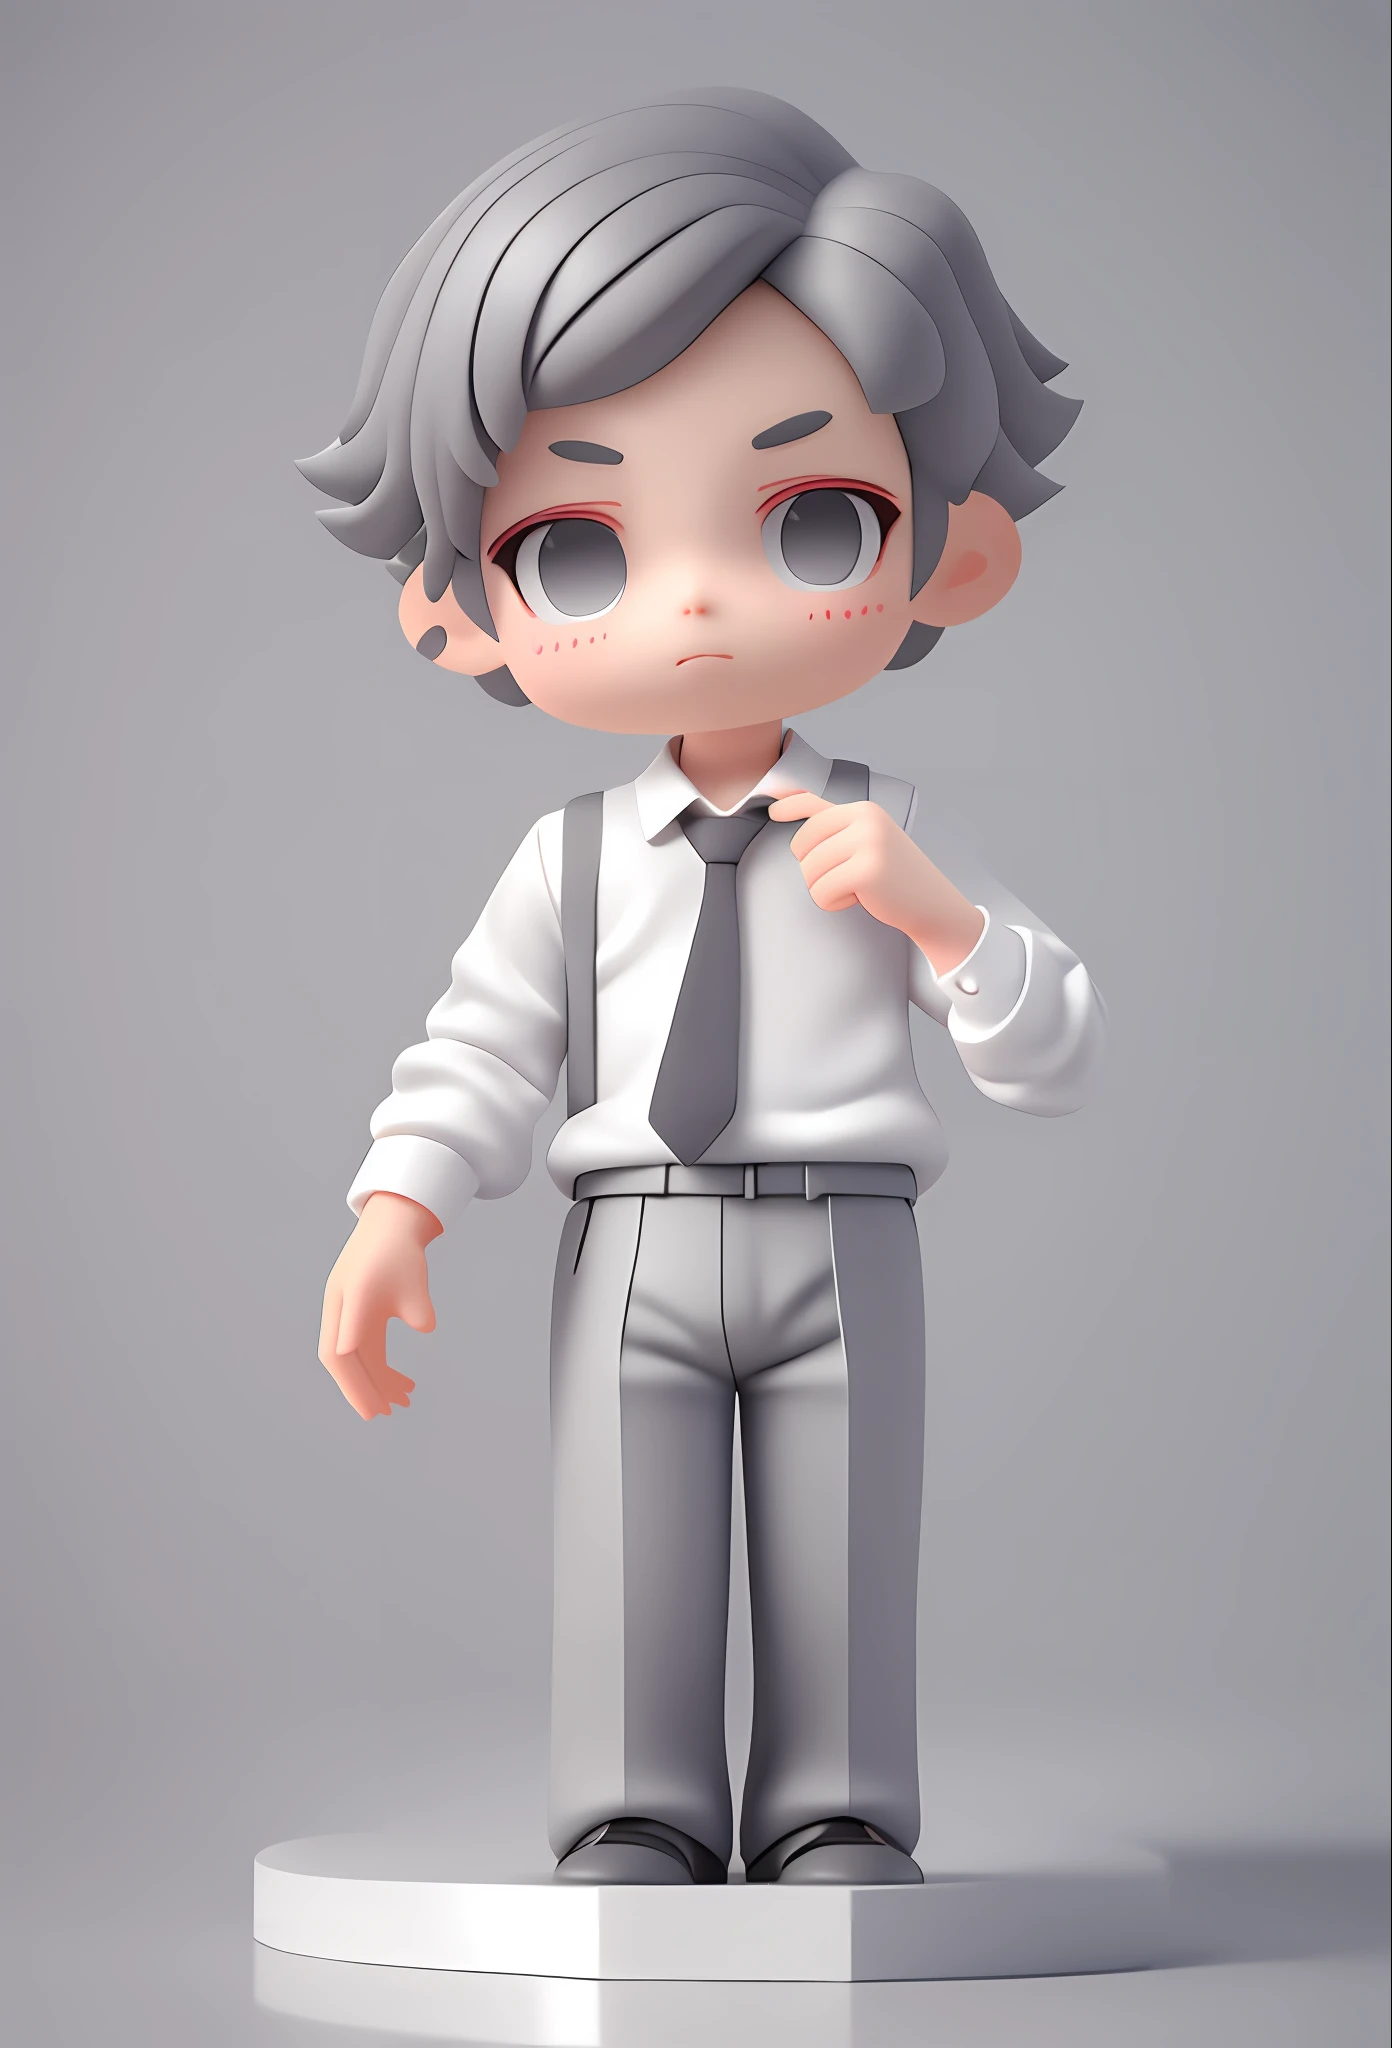 Blindkasten 3D-Design, Netter Junge trägt weißes Hemd mit grauem Anzug in der Hand, graue Anzughose, süßes 3D-Rendering, Anime-Porträt, süßes 3D-Rendering eines Anime-Jungen, süße detaillierte digitale Kunst, 3D-Rendering stilisiert, 3D gerenderte Charakterkunst 8k, süße digitale Malerei, 3D im Anime-Stil, super detailliertes Rendering